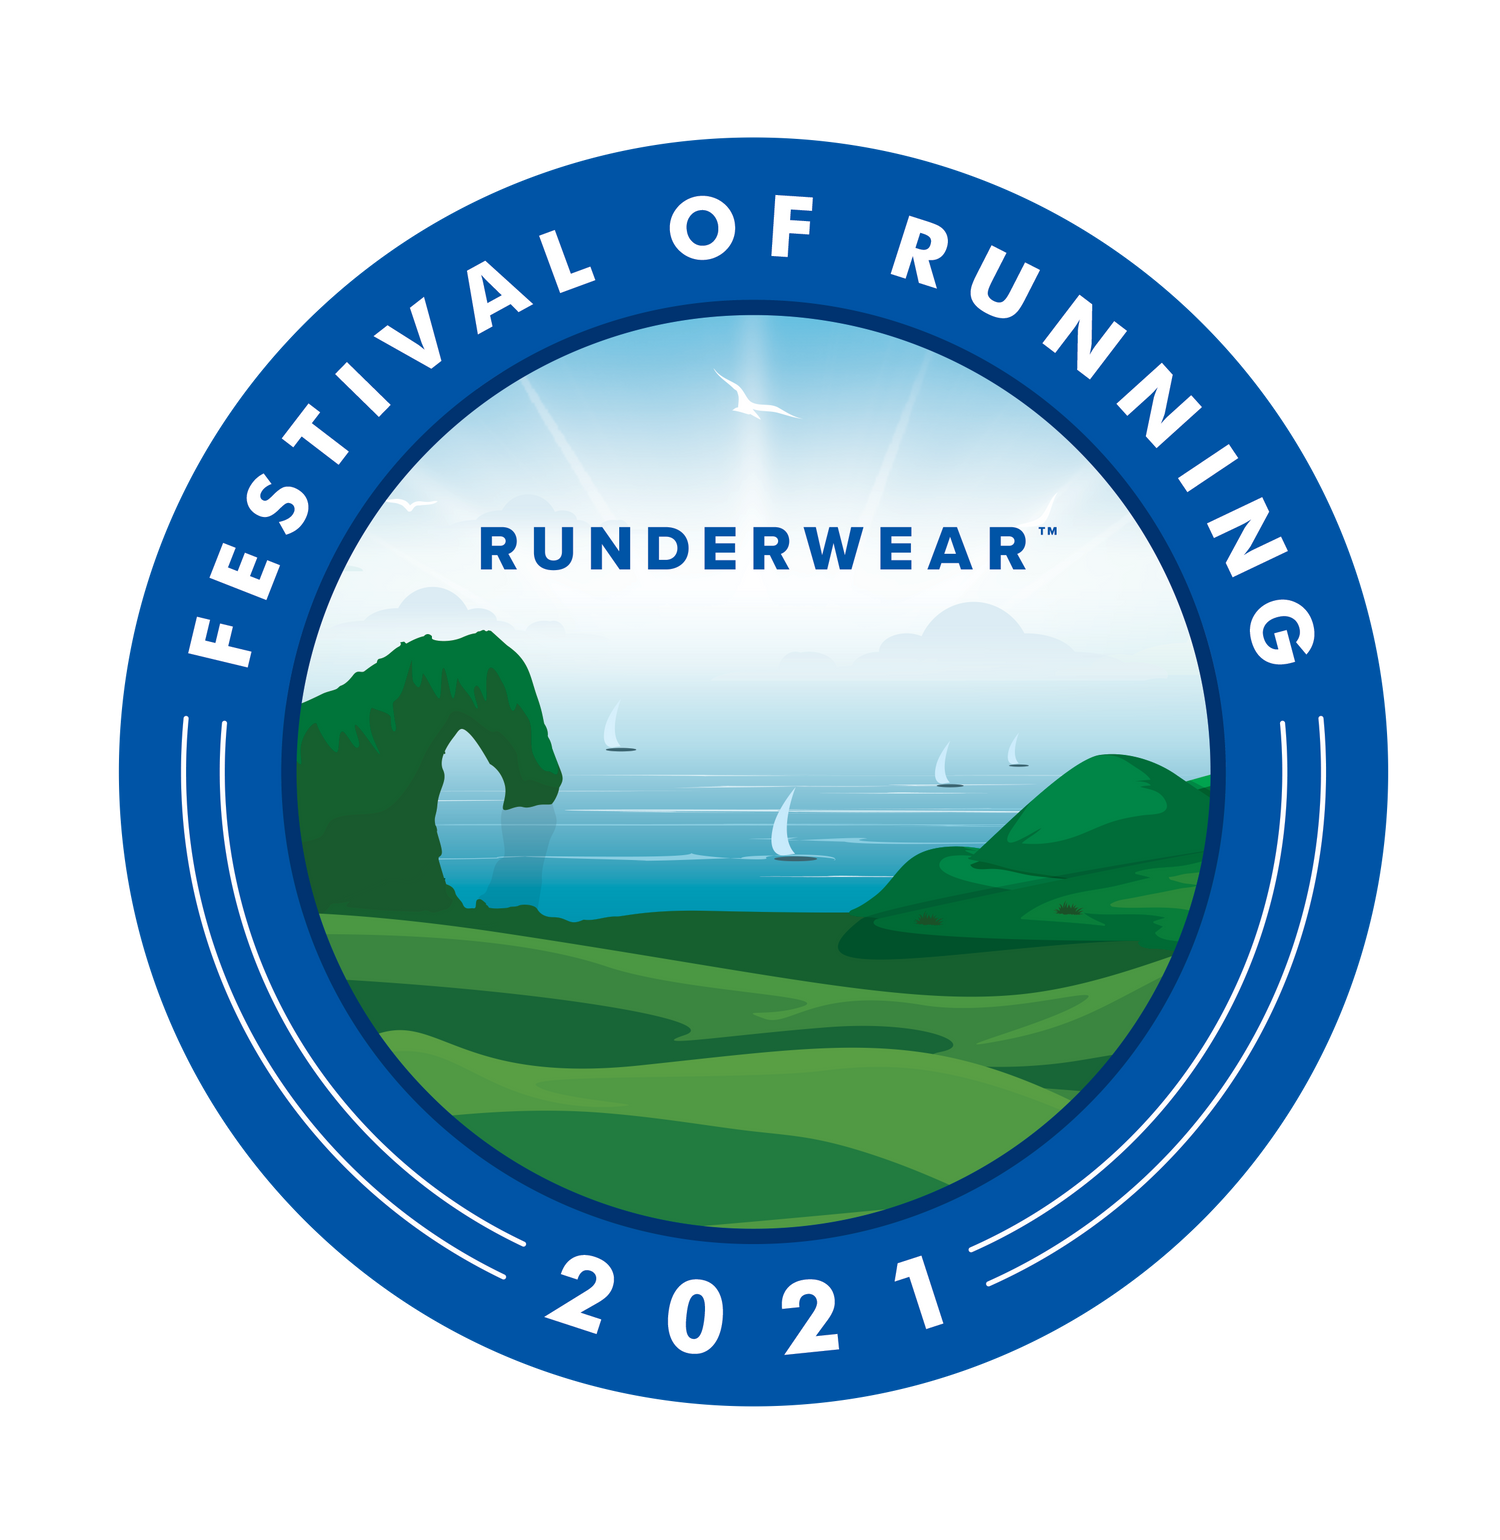 Runderwear Festival of Running 2021